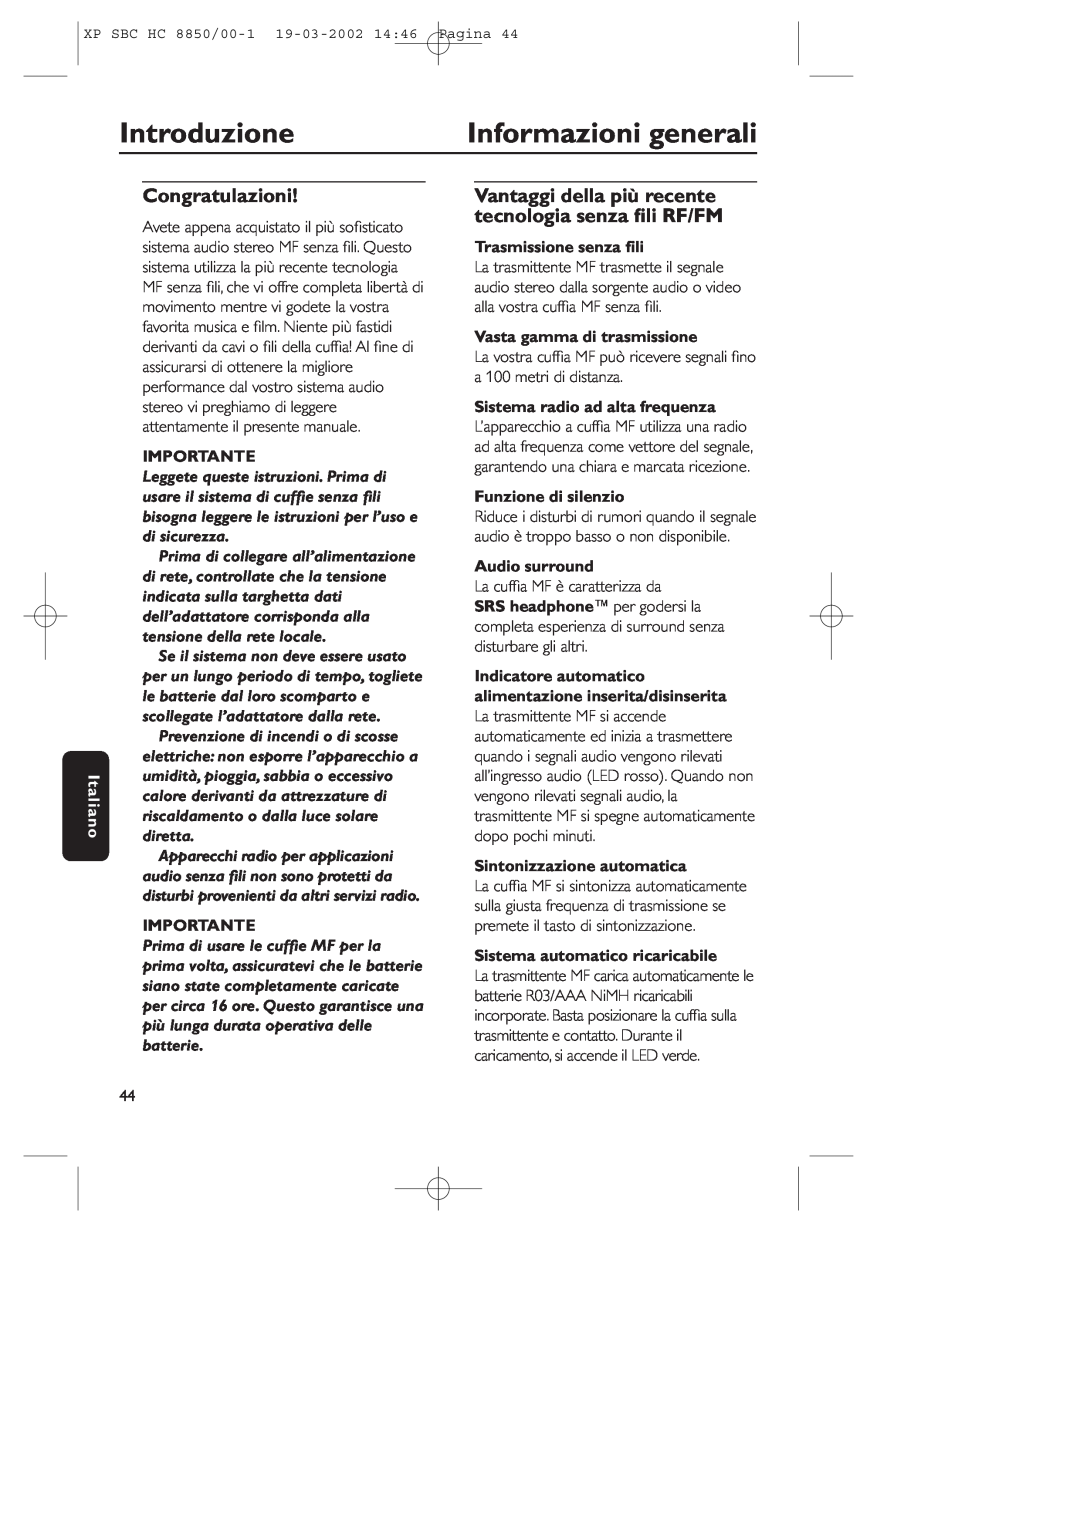 Philips HC8850 manual Introduzione, Informazioni generali, Congratulazioni, Italiano, Importante, Trasmissione senza ﬁli 